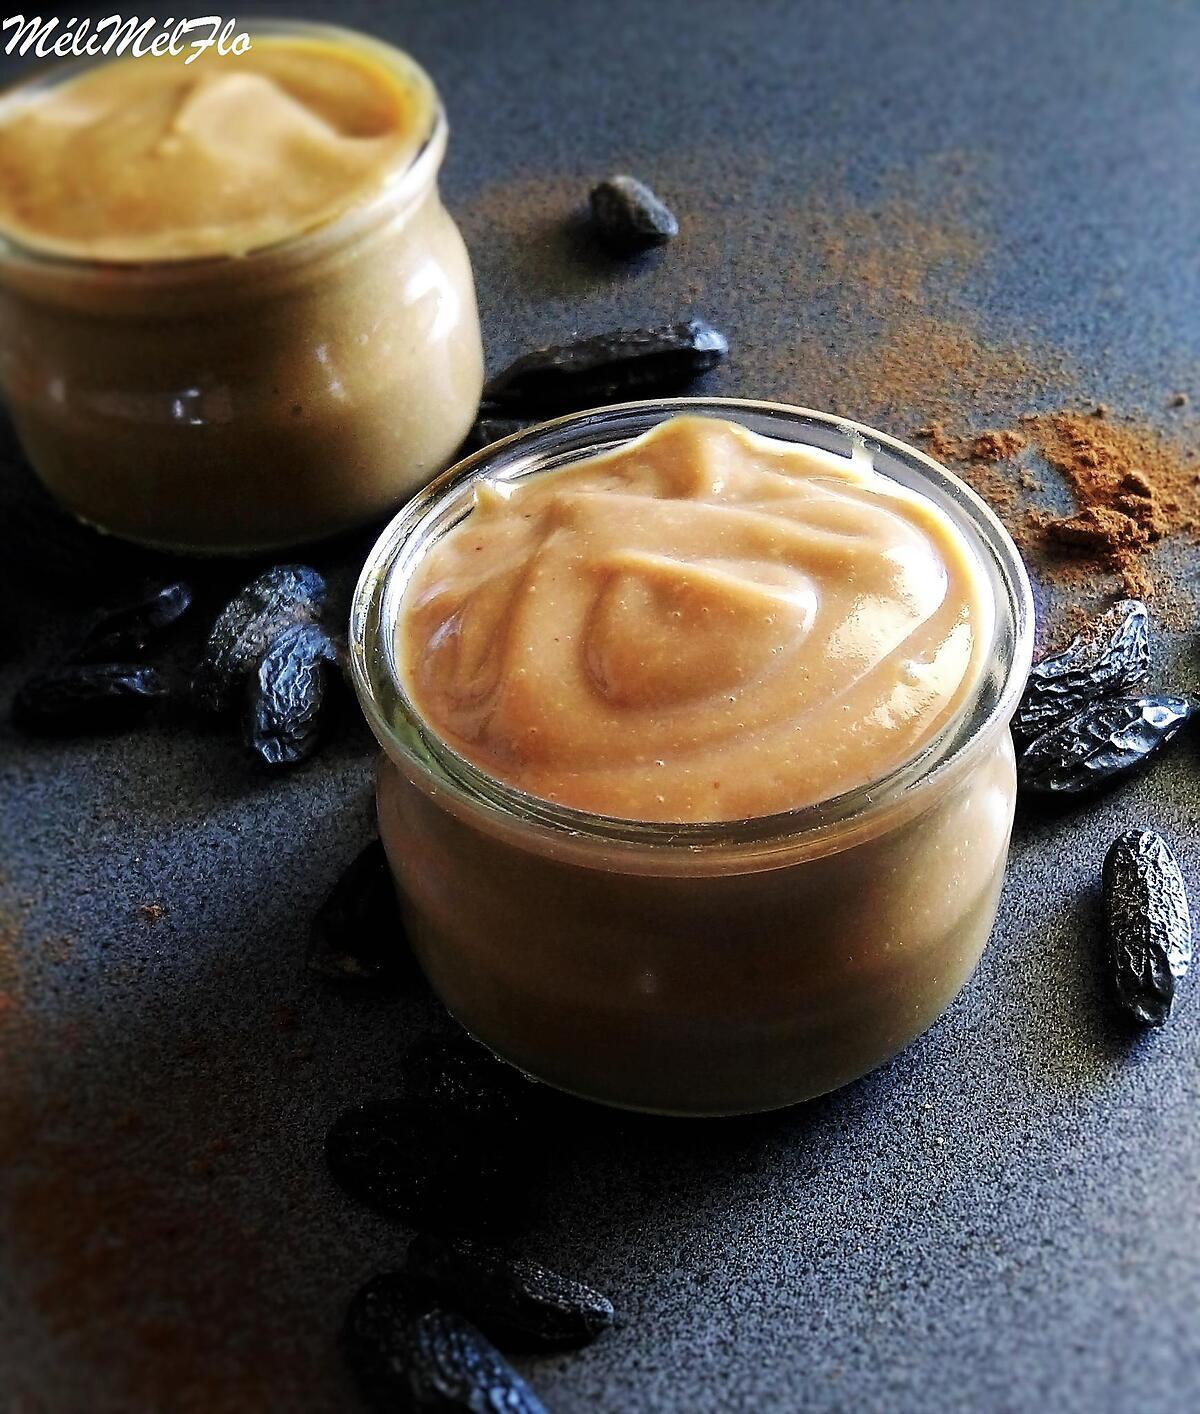 recette Crème dessert au café comme la marque qu'on connait mais en meilleur ♥♥♥